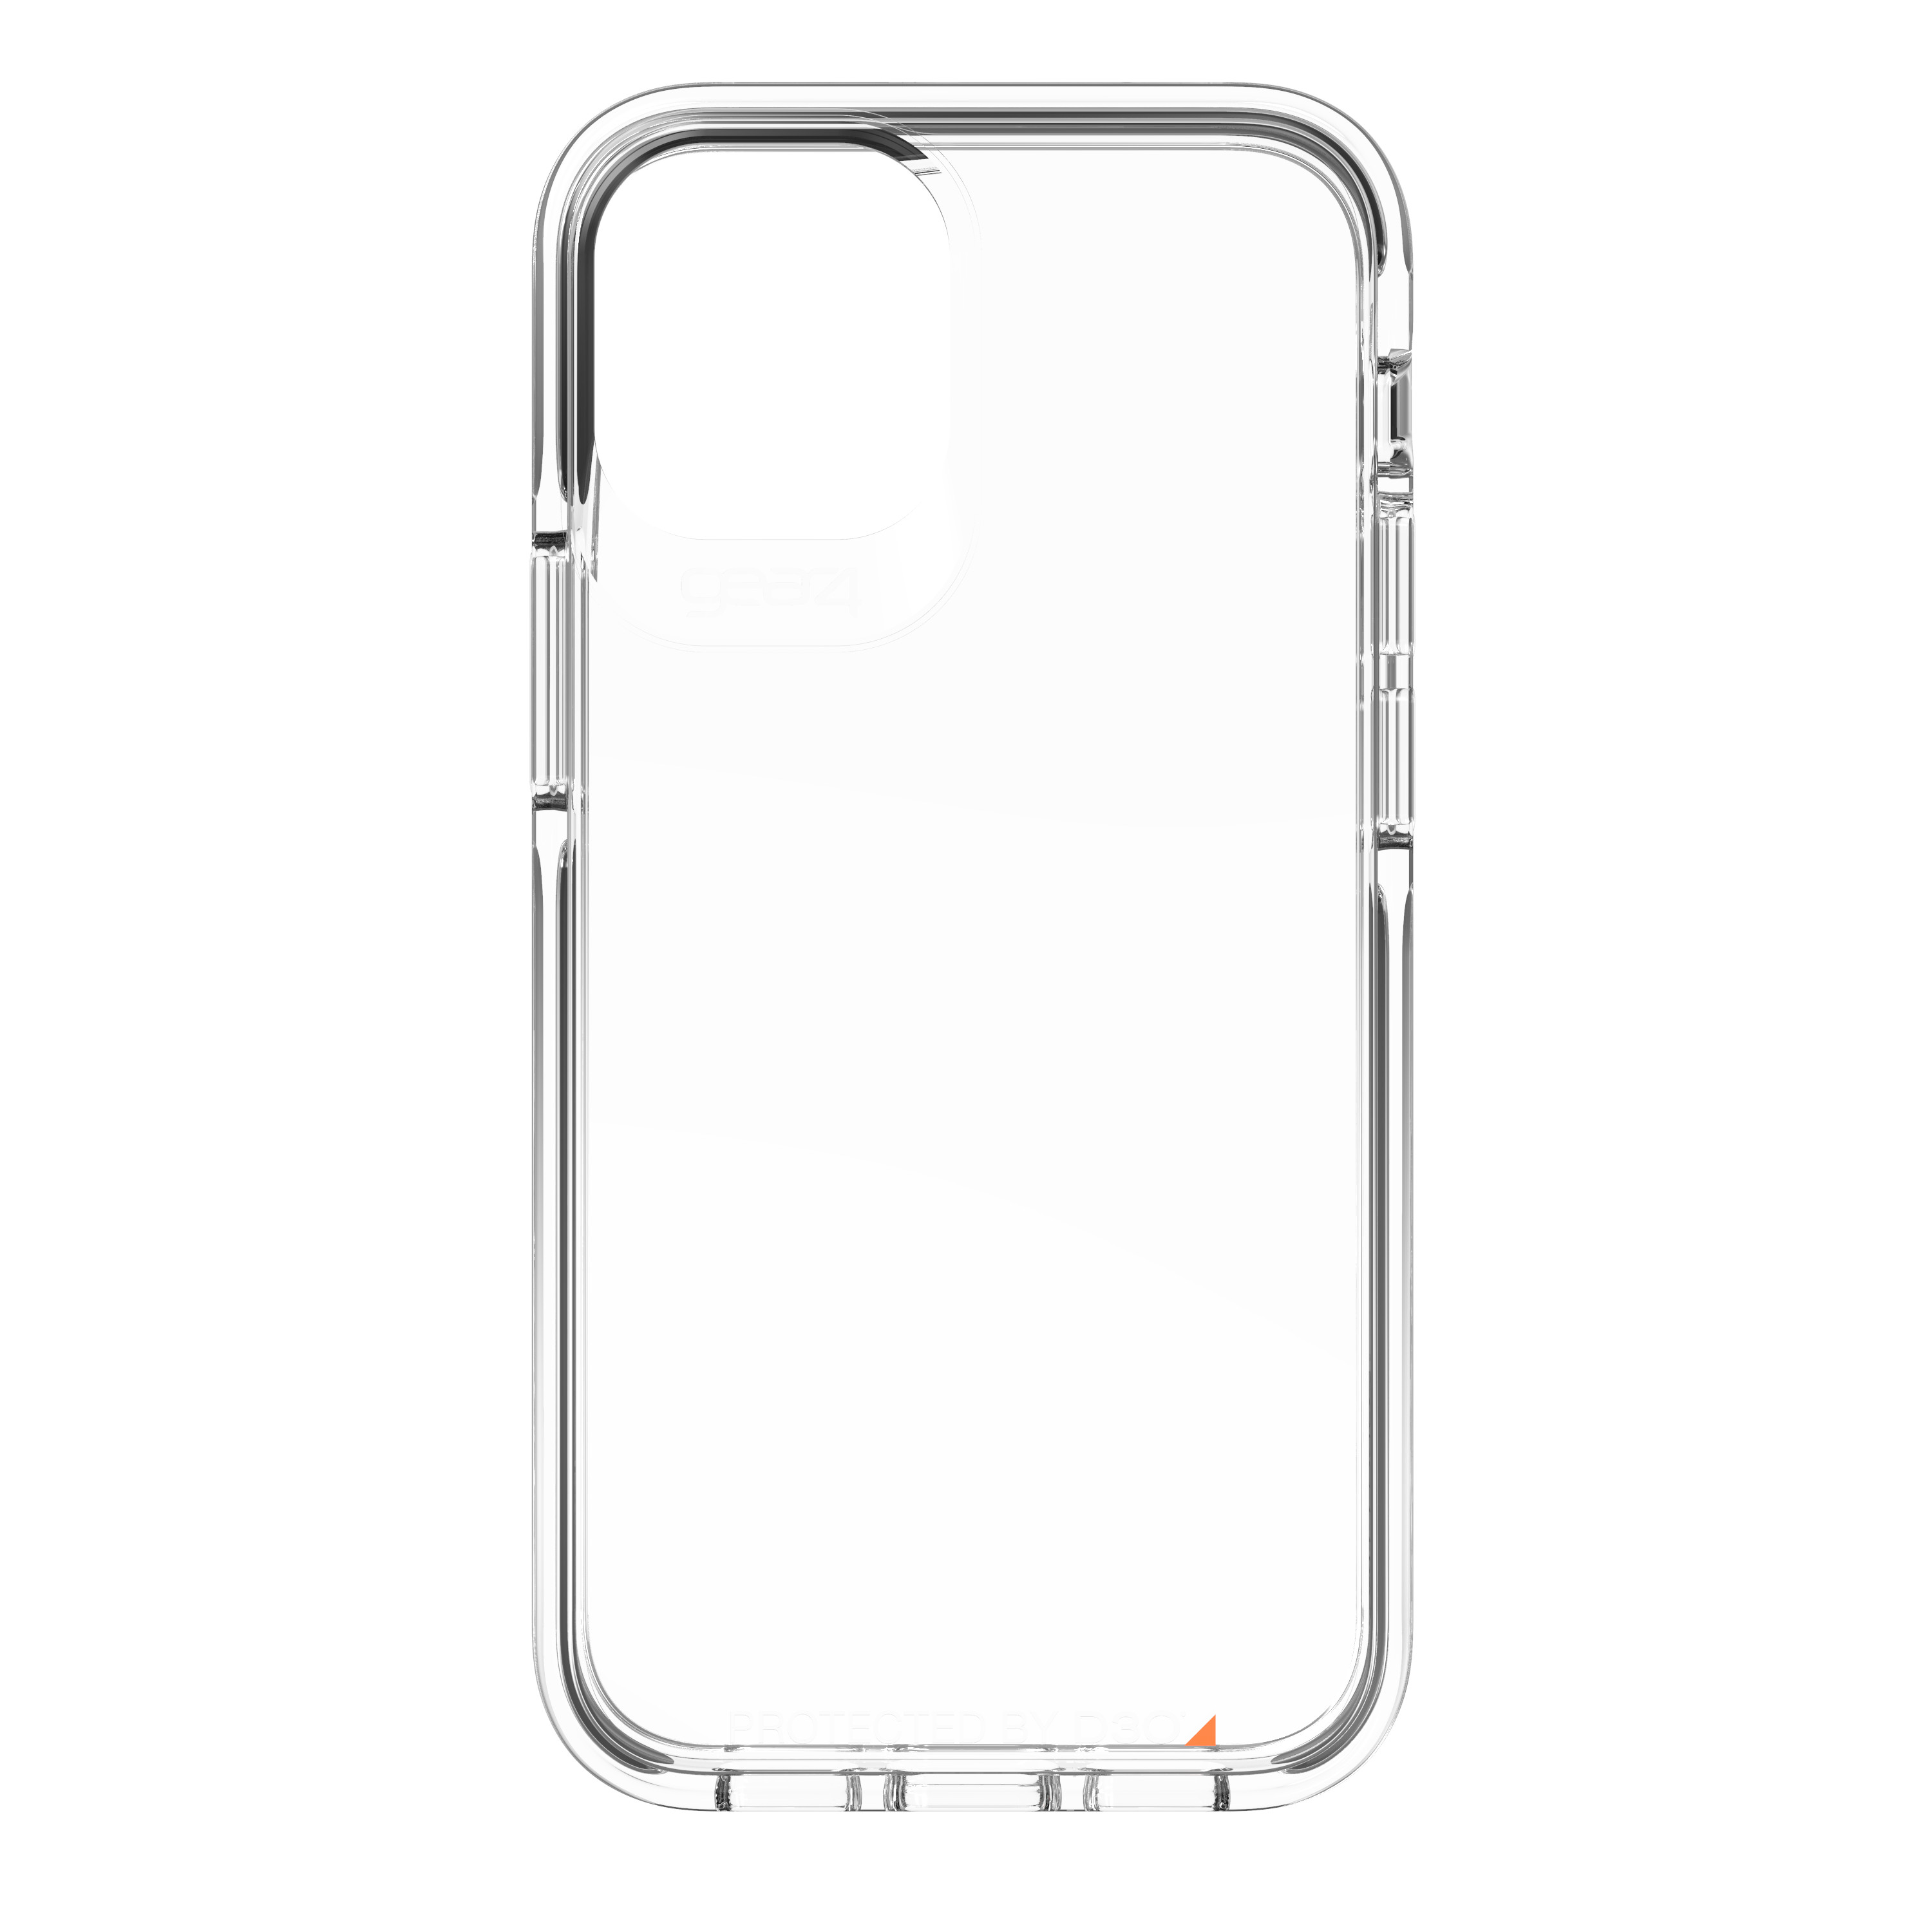 Ốp lưng Gear4 Piccadilly iPhone - Công nghệ chống sốc độc quyền D3O, kháng khuẩn, tương thích tốt với sóng 5G - Hàng chính hãng